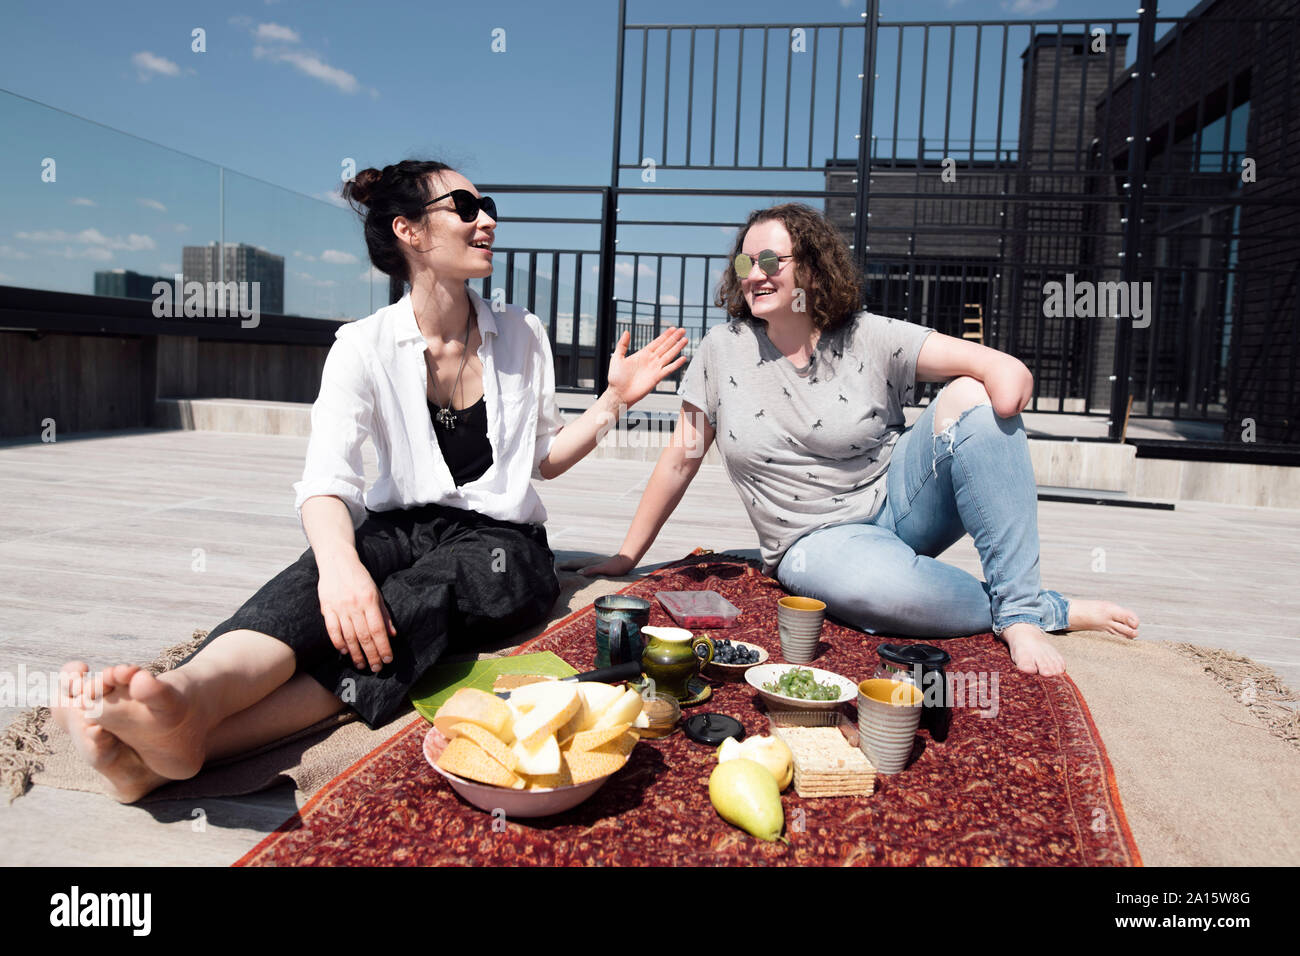 Frau mit unten - Winkelstück Amputation mit ihrem Freund in eine gesunde Mahlzeit auf dem Dach Stockfoto